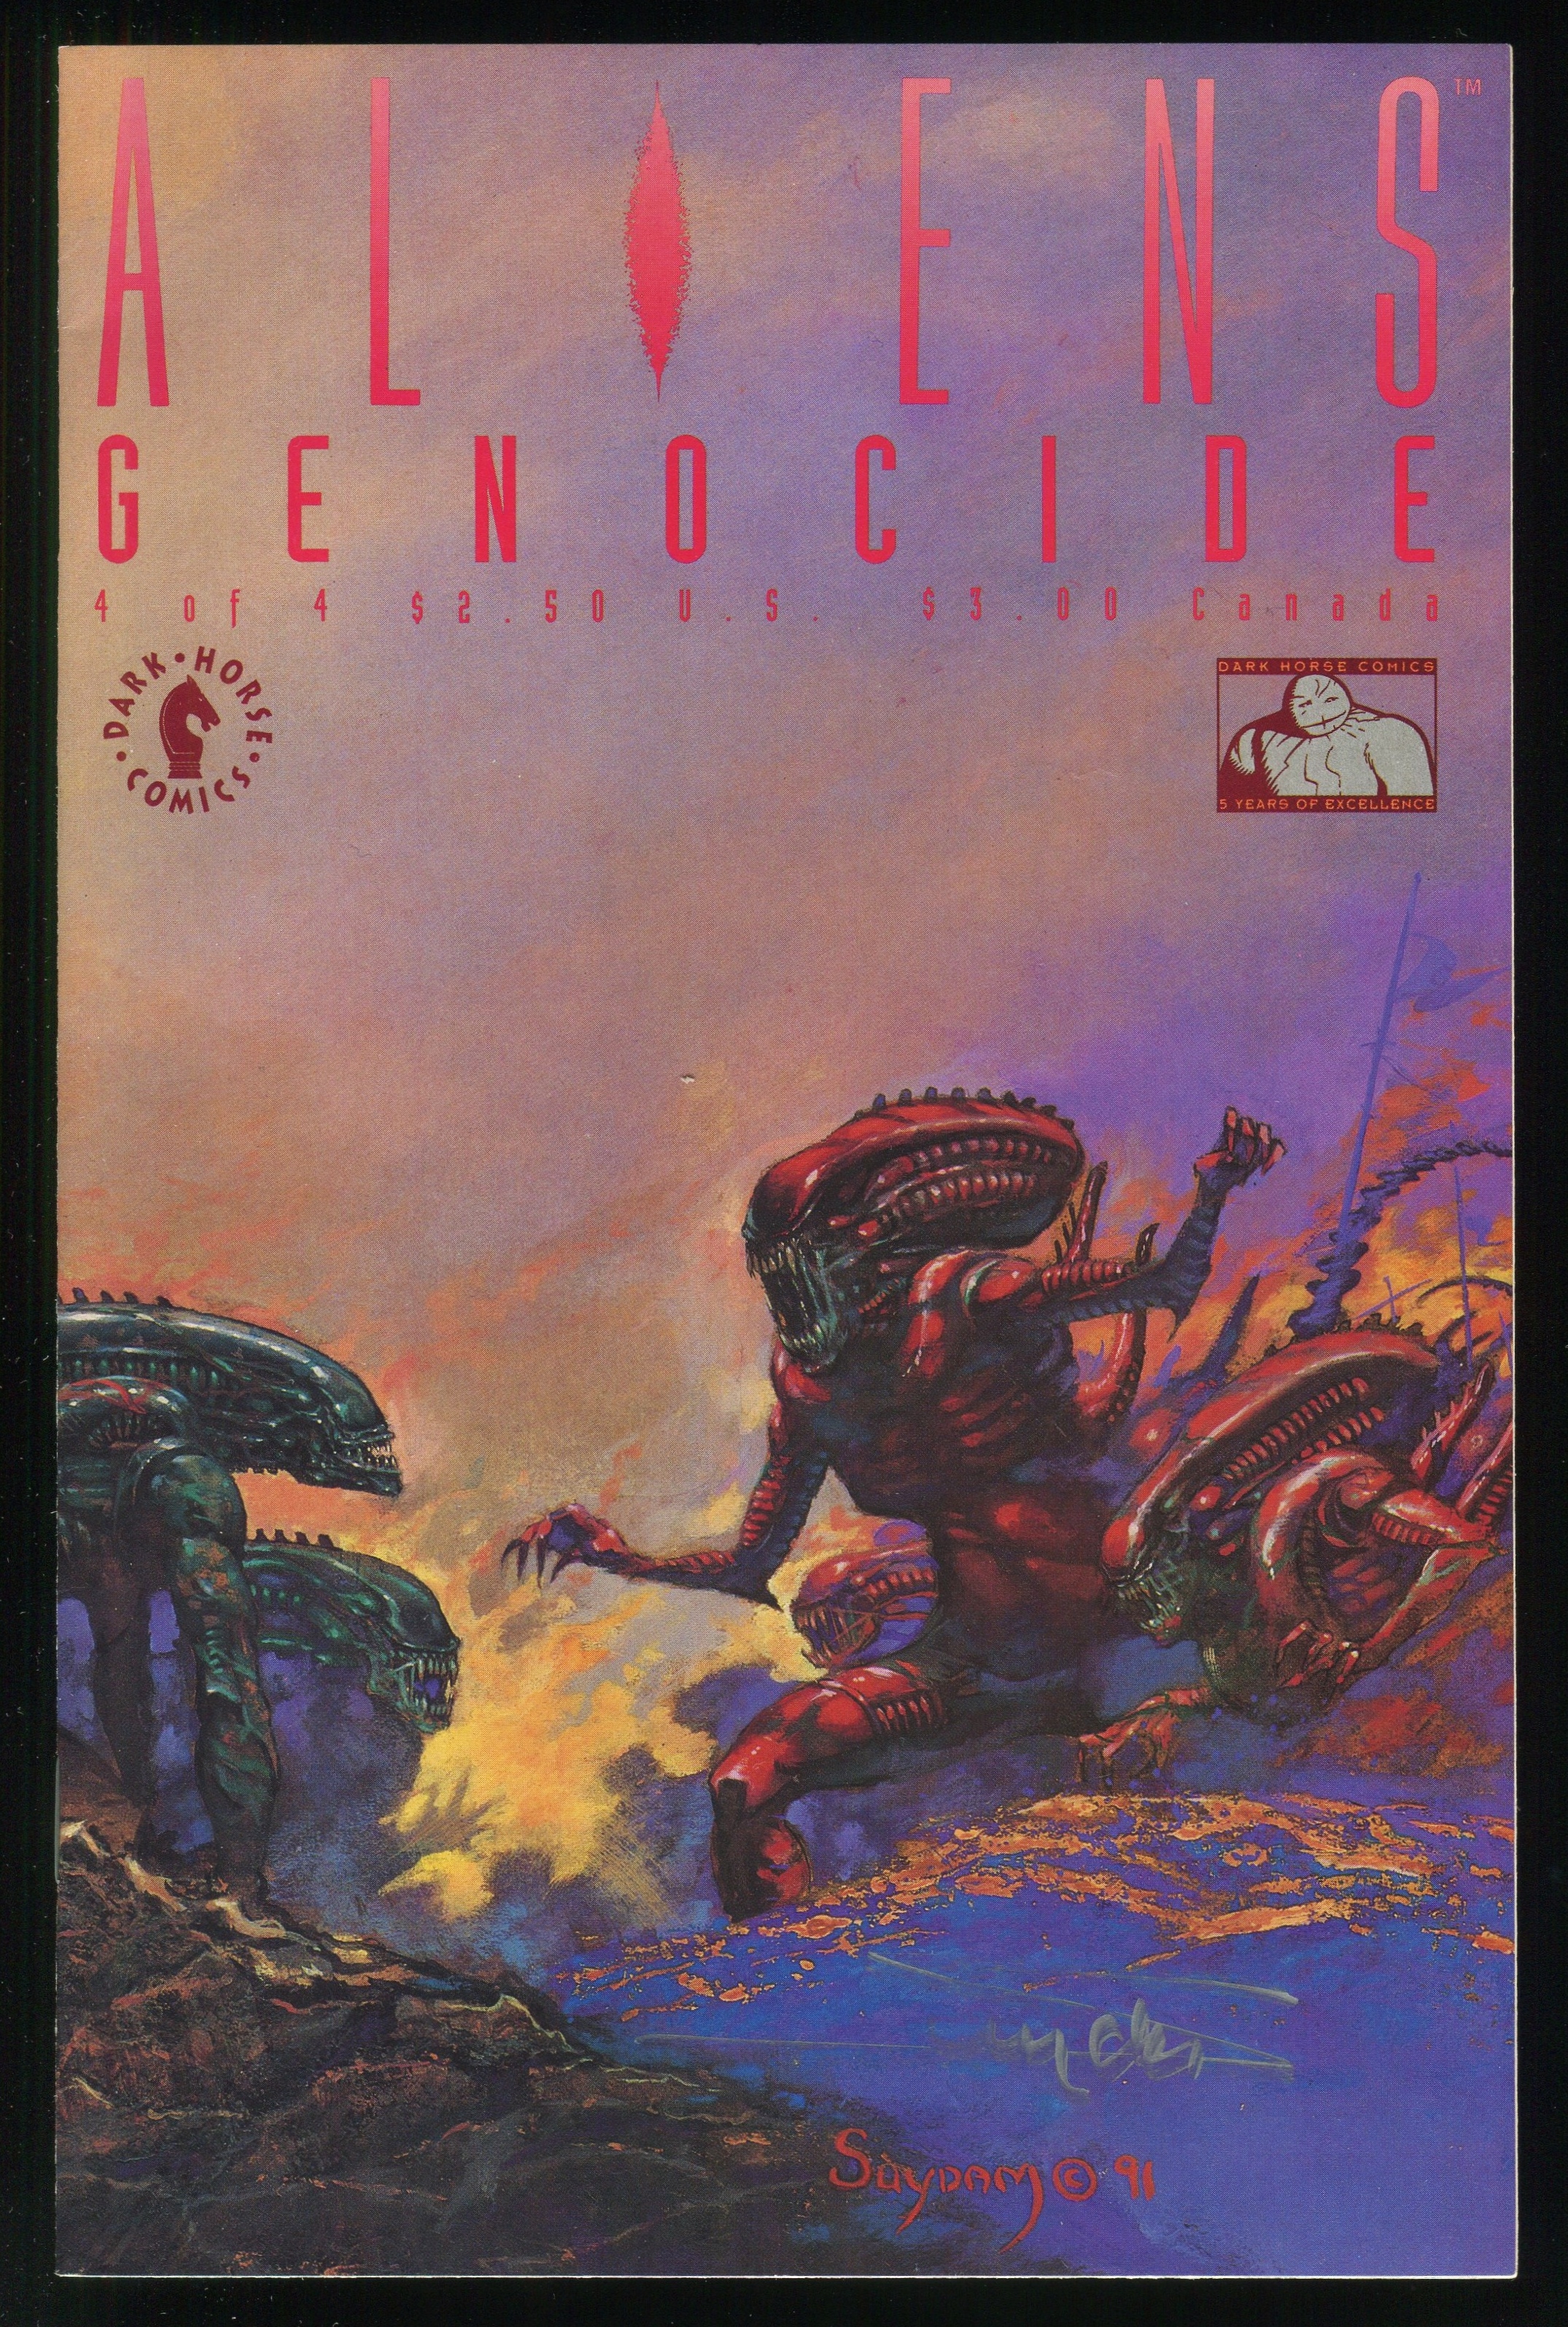 Aliens: genocide